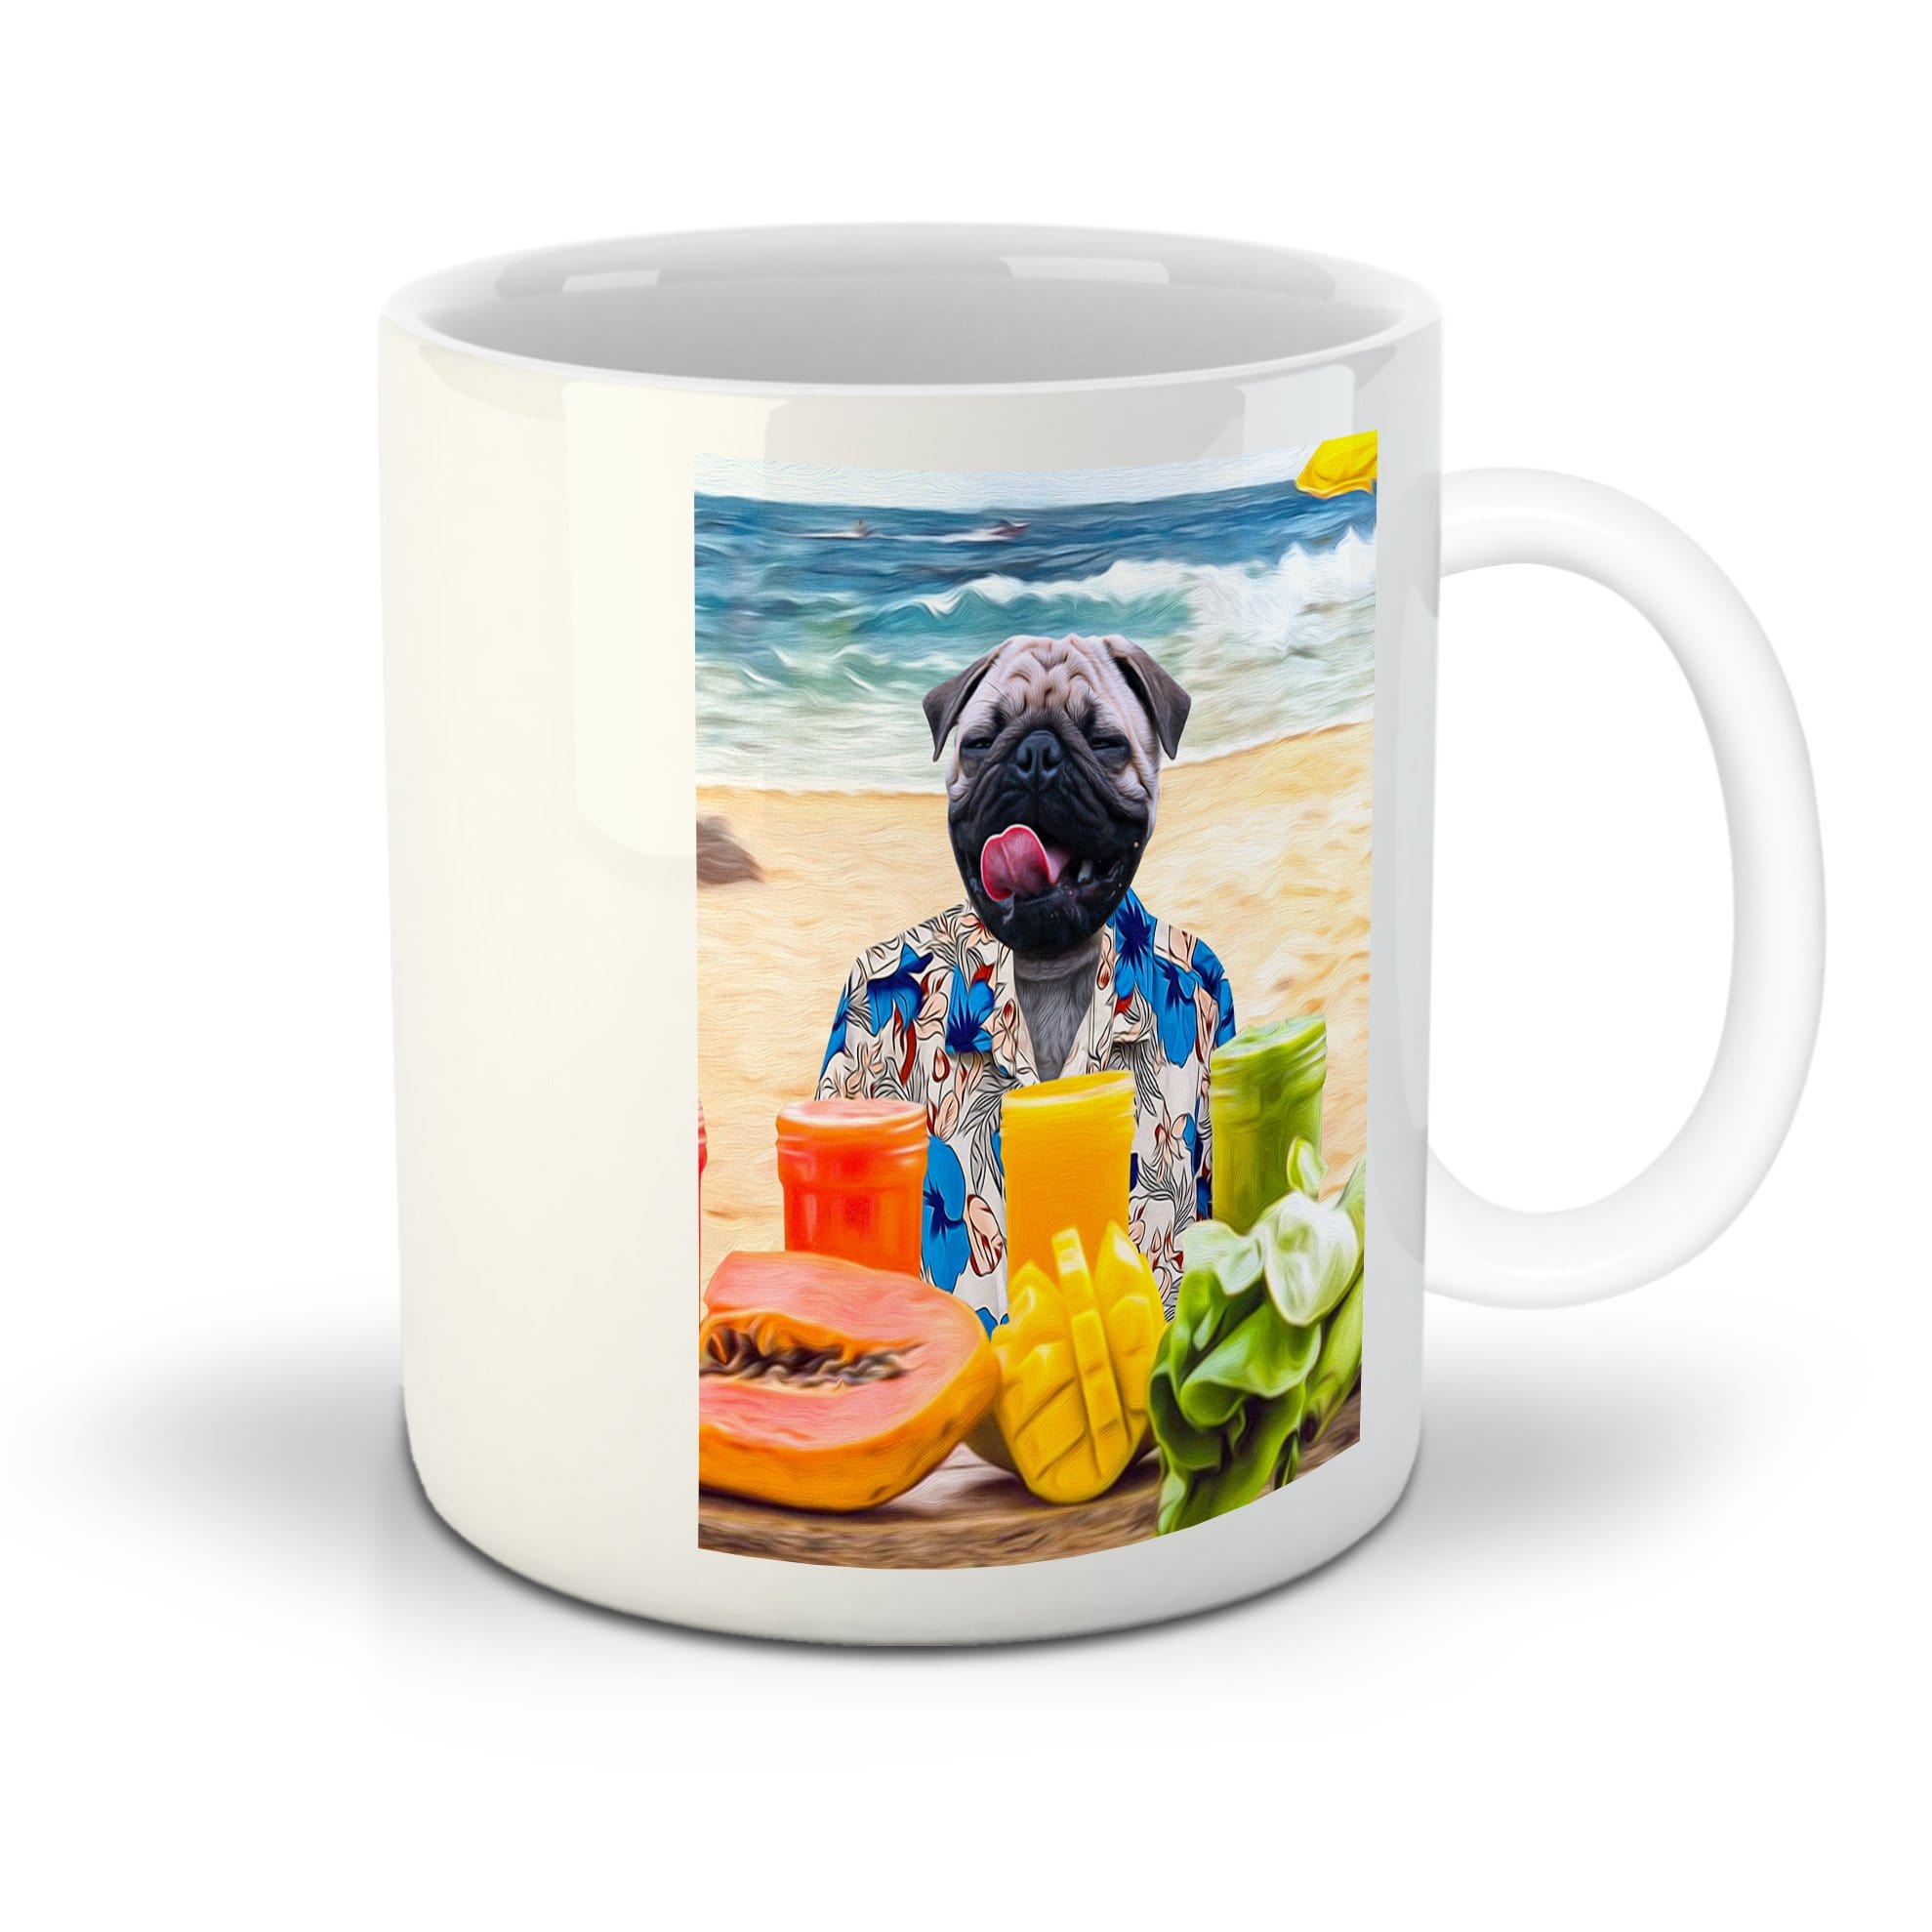 Taza personalizada para mascota &#39;El perro de la playa&#39;